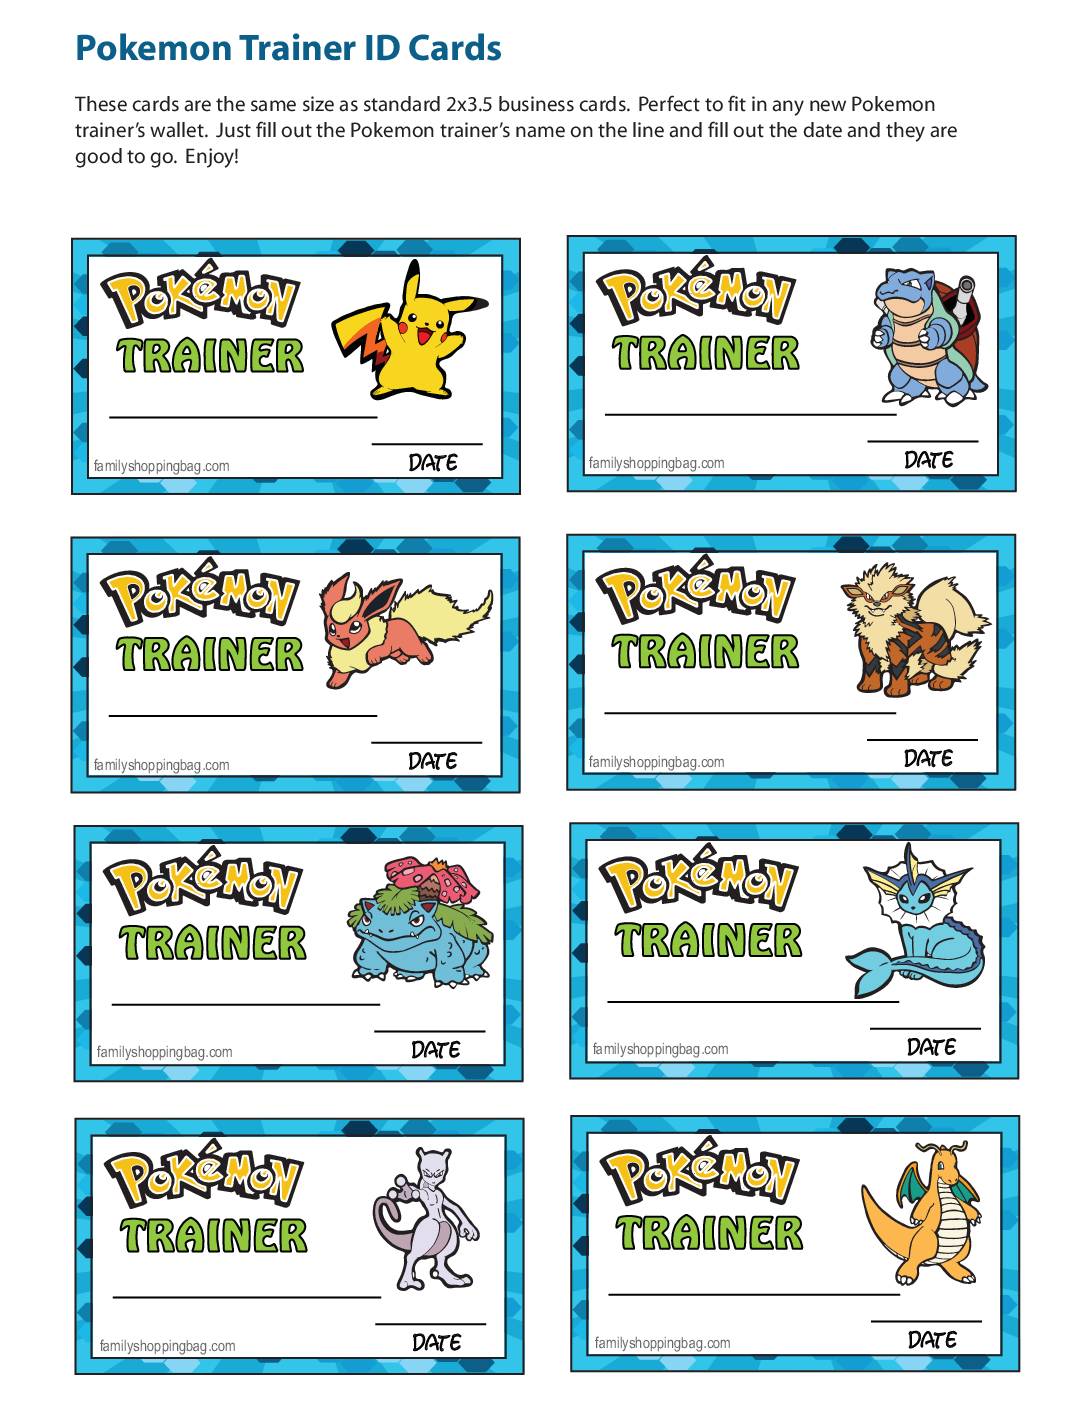 The best Pokémon Trainer designs • AIPT